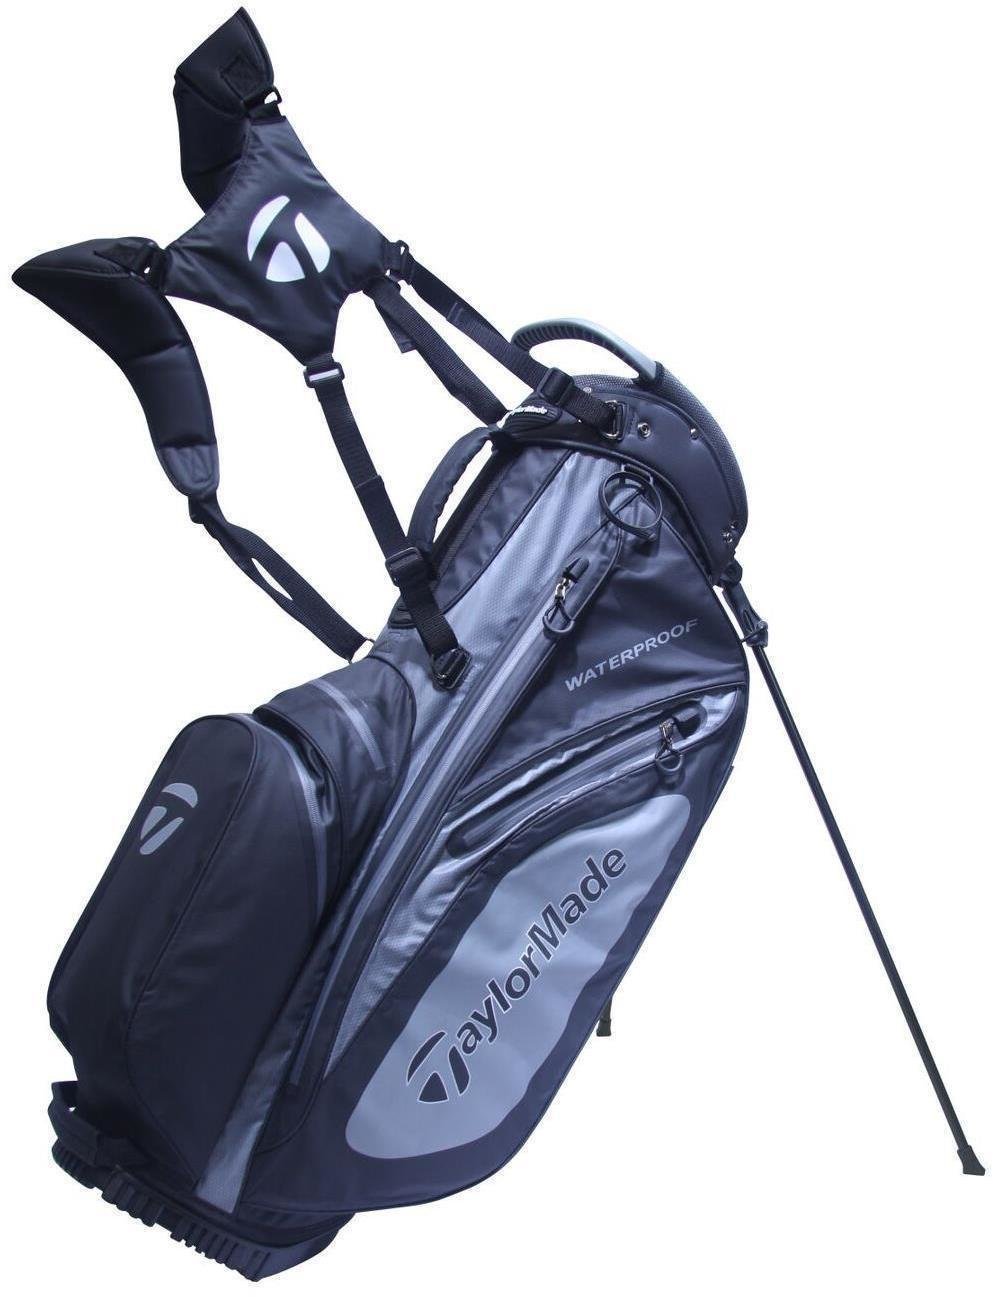 Sac de golf TaylorMade Flextech Waterproof Black/Charcoal Stand Bag 2017